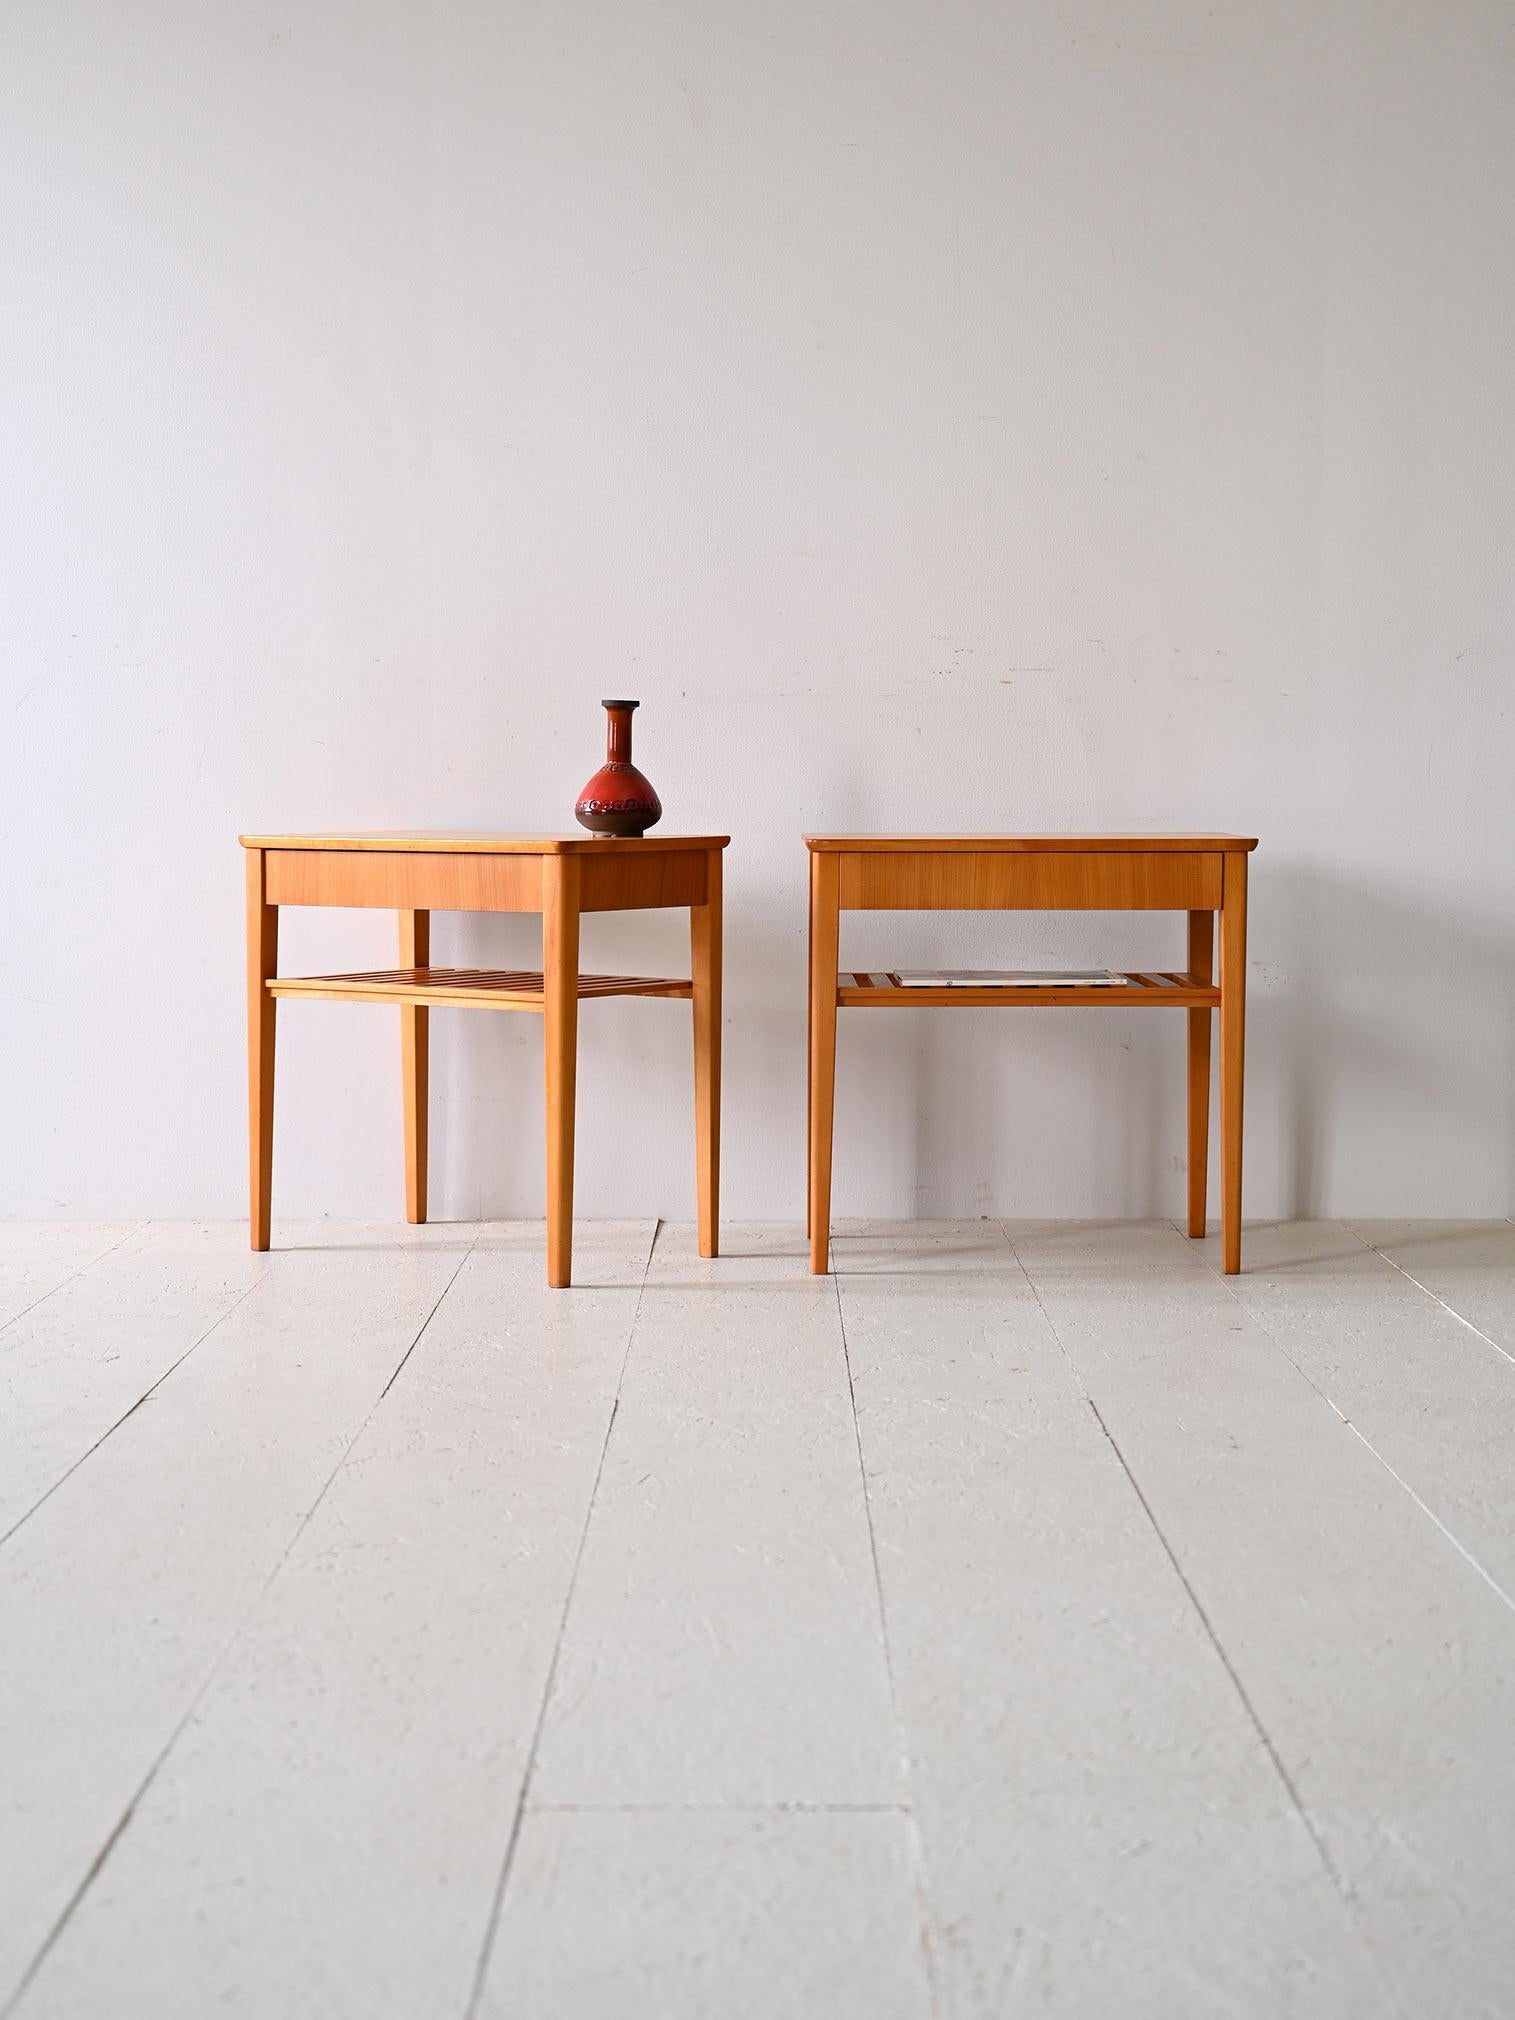 Coppia di tavolini / comodini scandinavi originali anni '60.

Eleganti e funzionali, questa coppia di comodini incarna lo stile nordico con linee estremamente semplici e pulite, caratterizzate da un design minimale e classico. Ogni comodino presenta